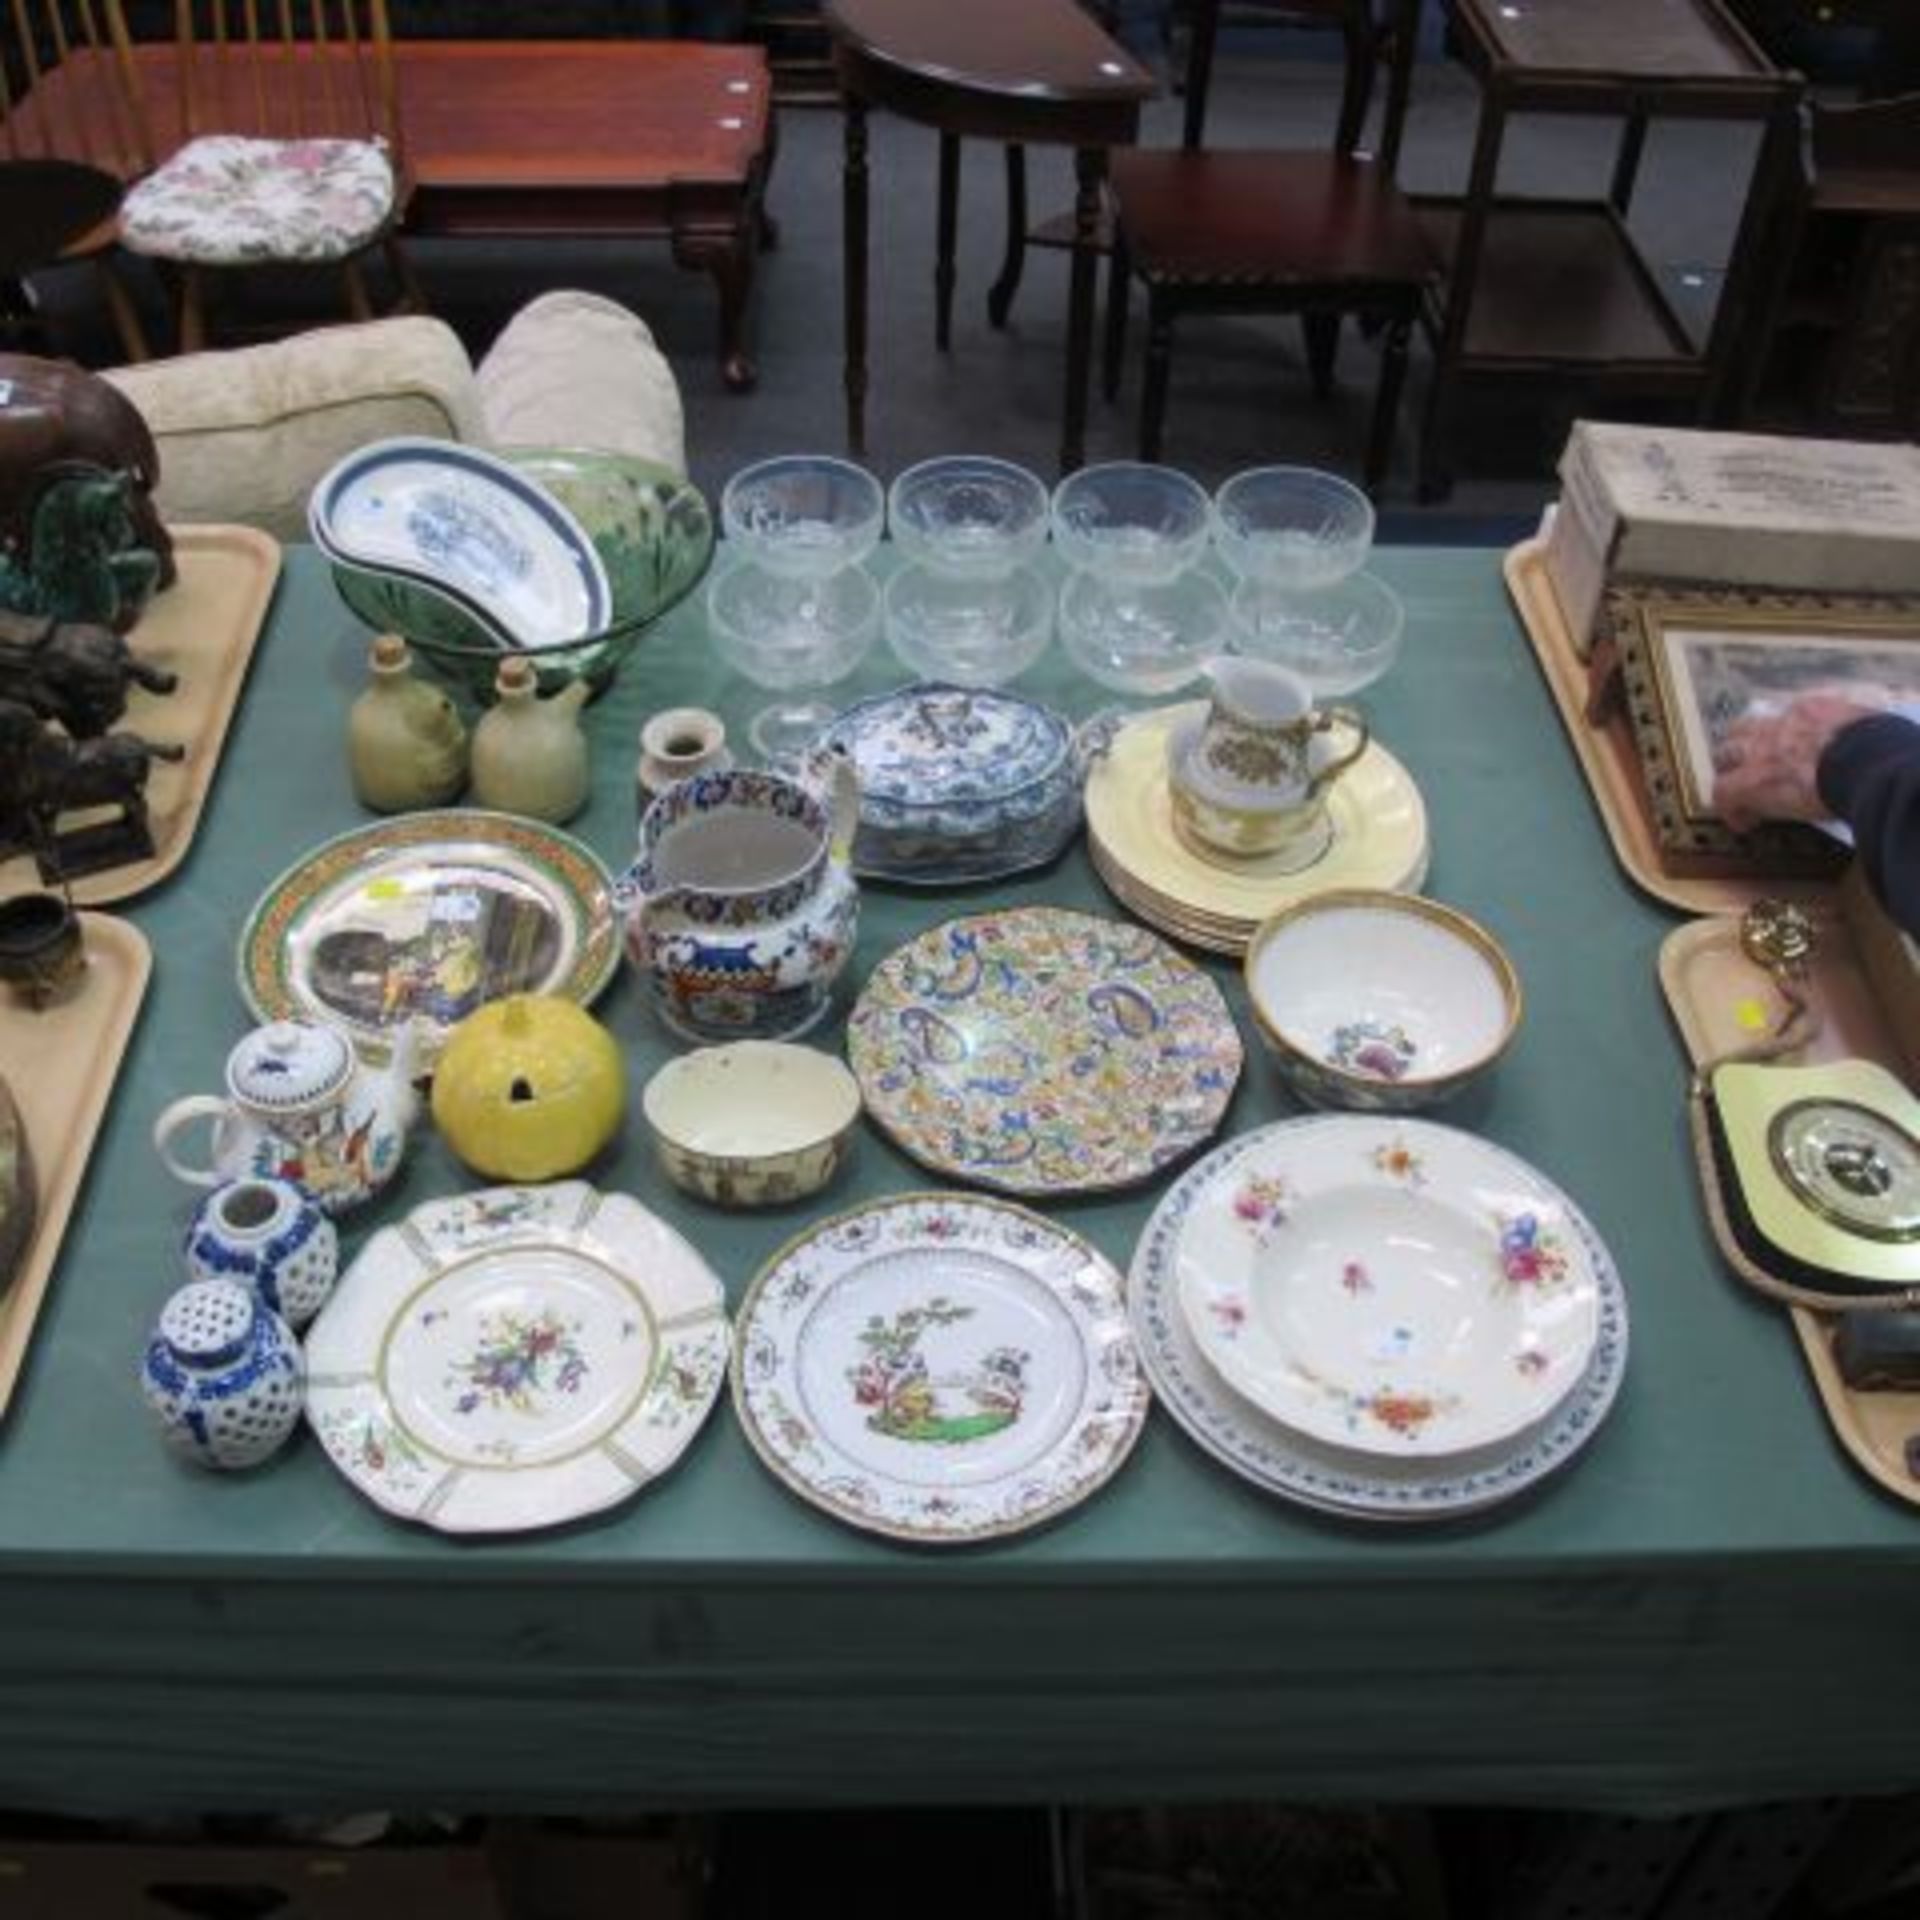 Glass & porcelain including Spode, Royal Doulton, Opaque China etc. (est. £20 - £40)